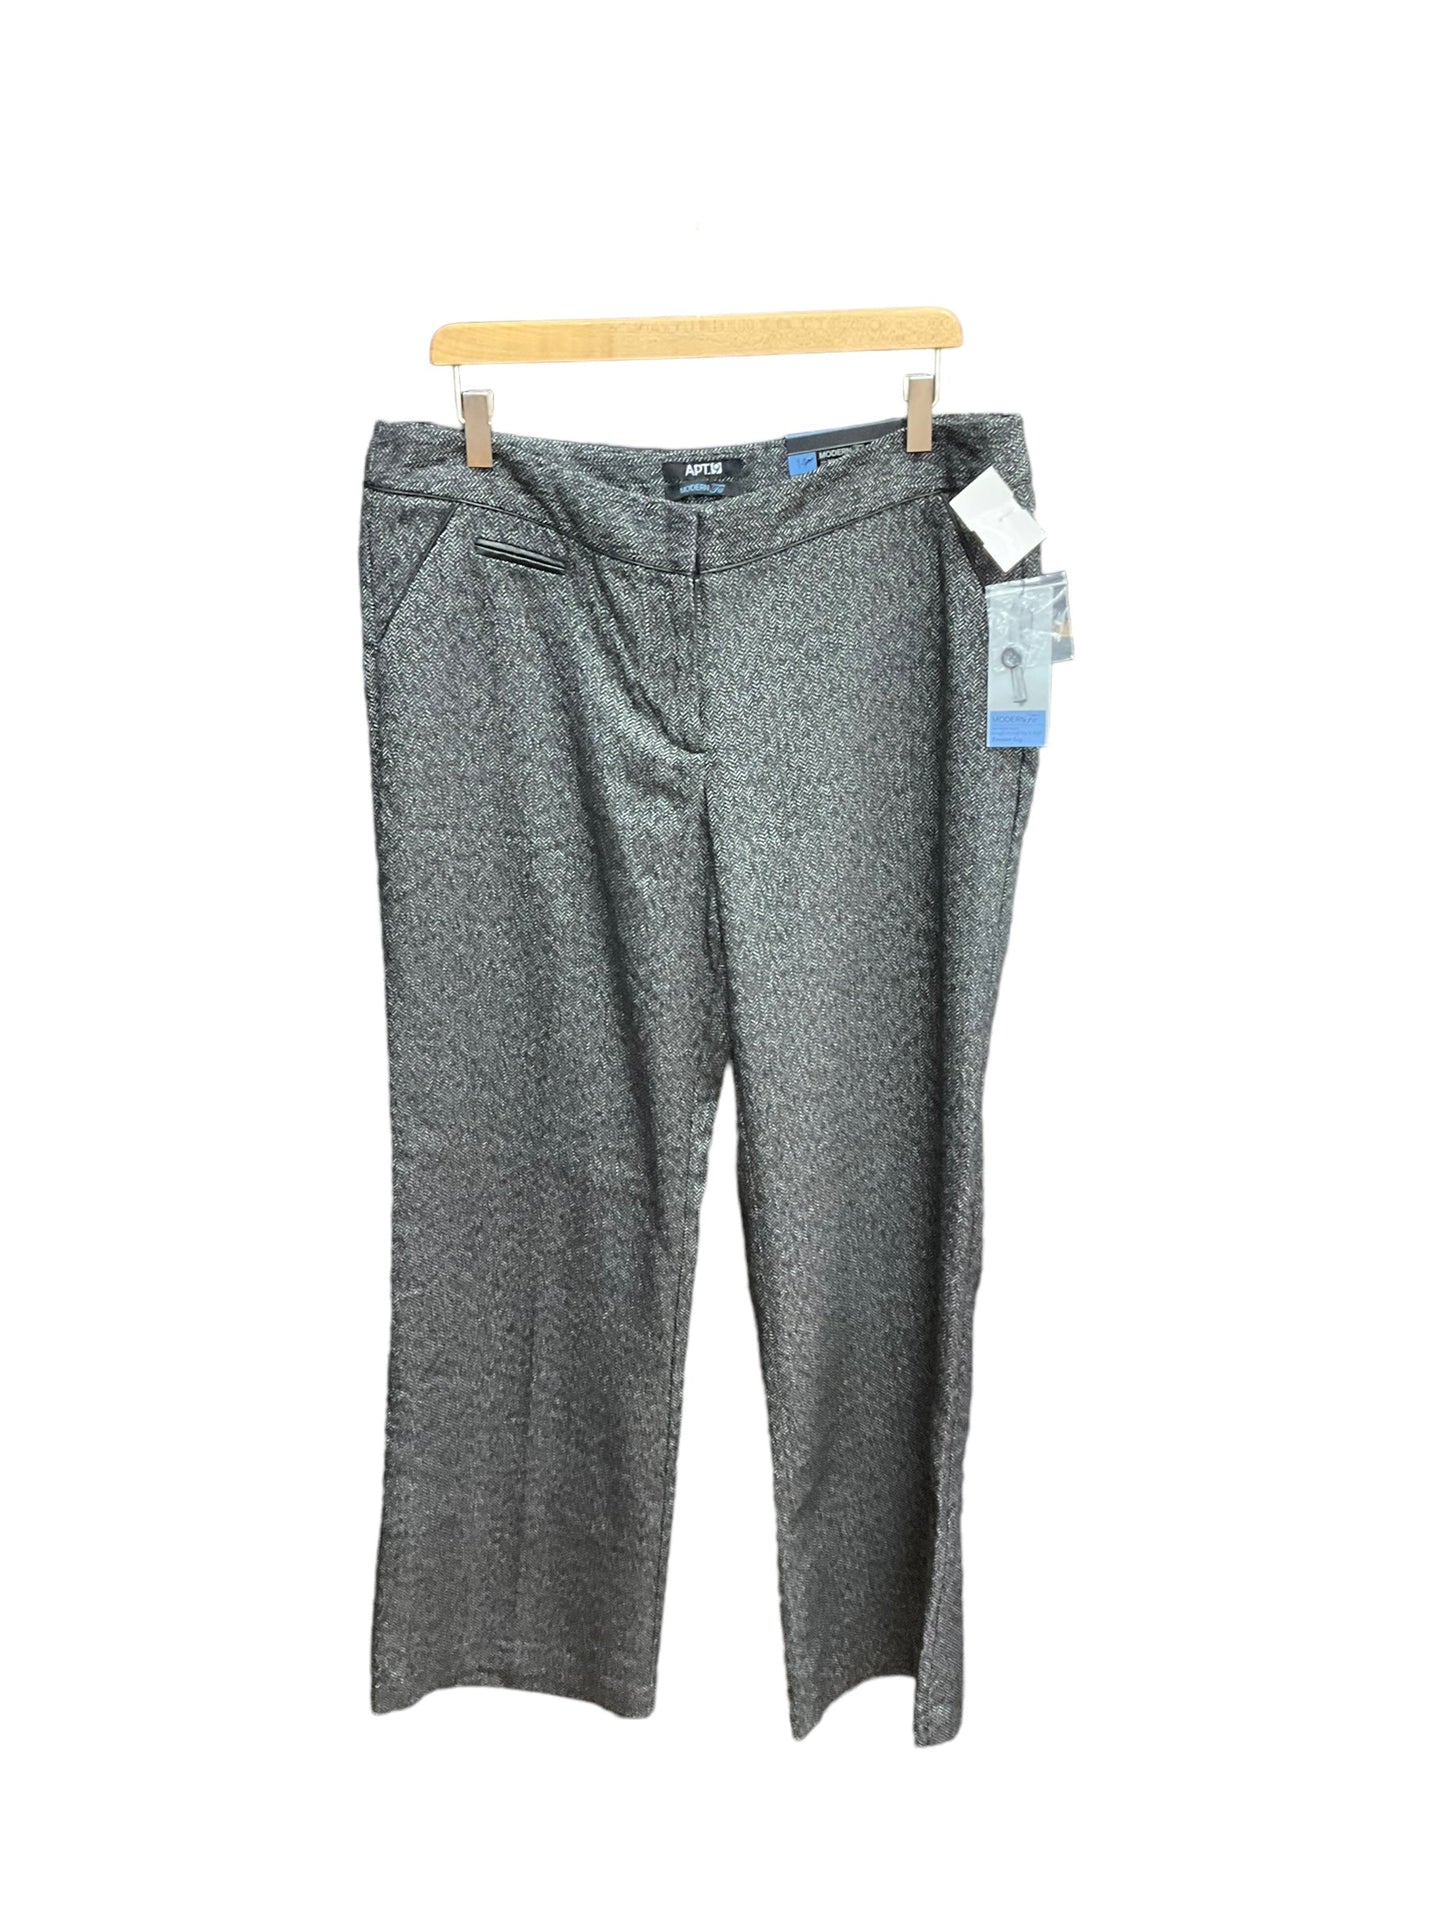 Grey Pants Dress Apt 9, Size 14